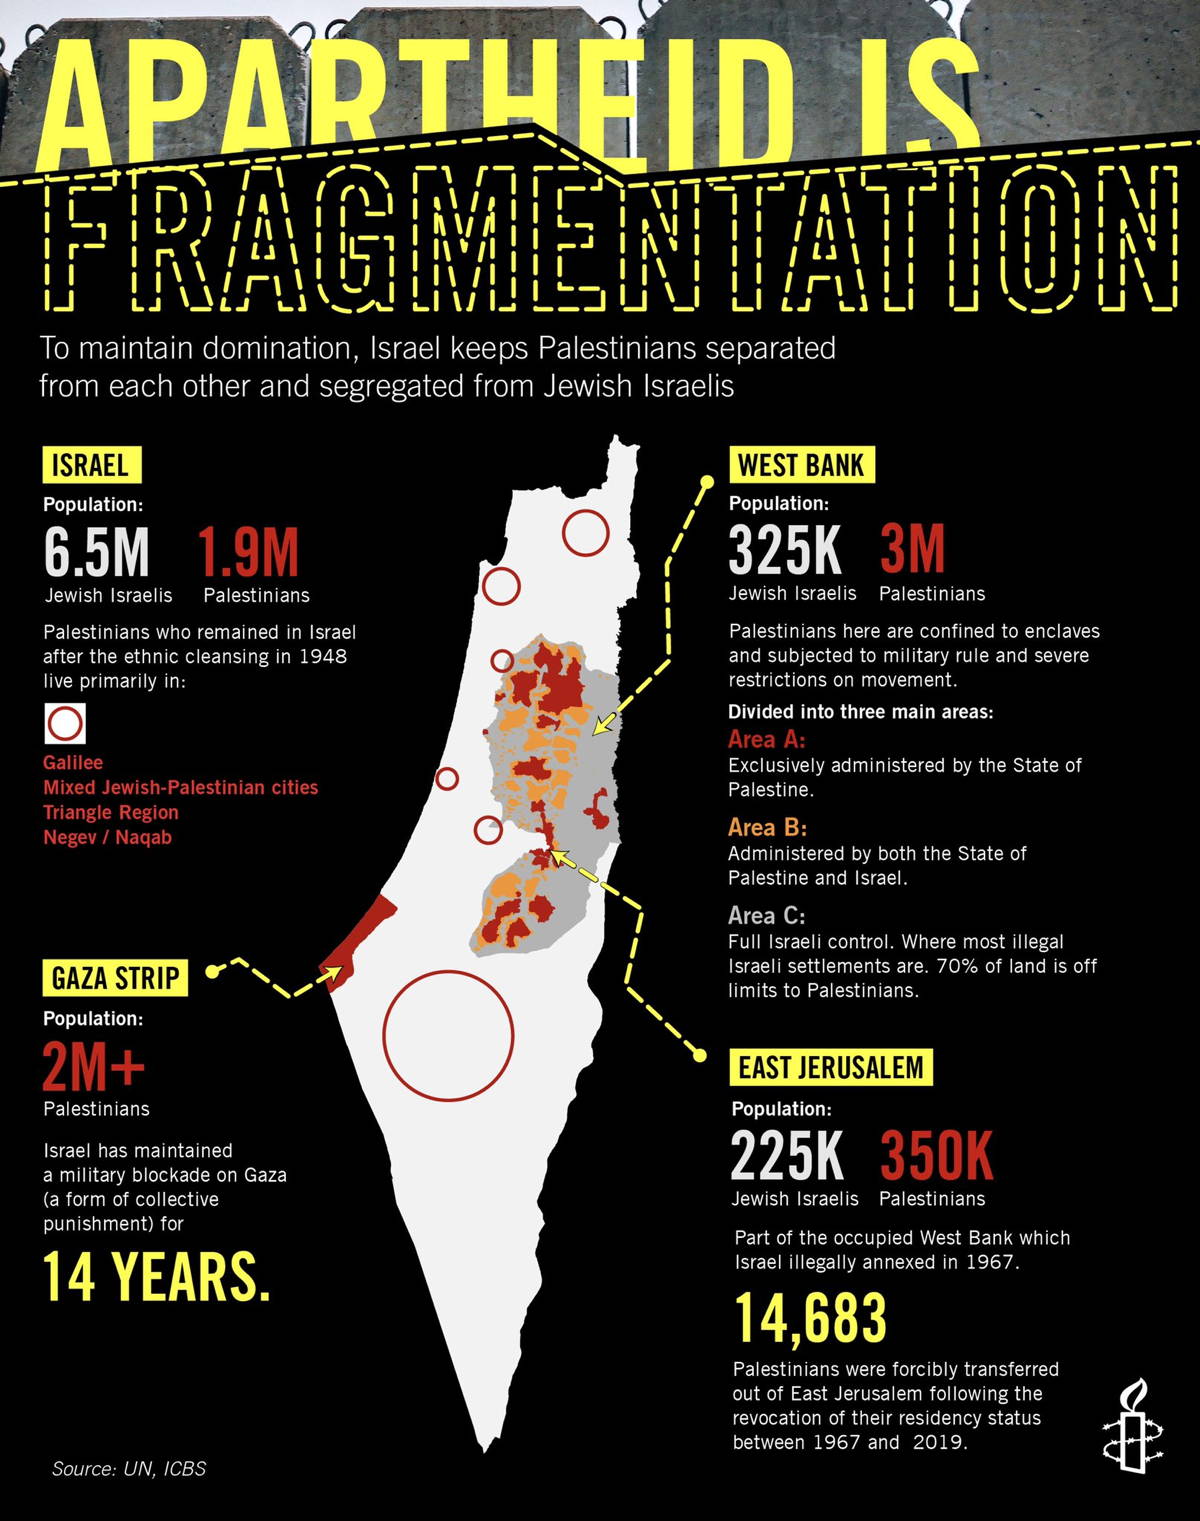 apartheid-is-fragmentation